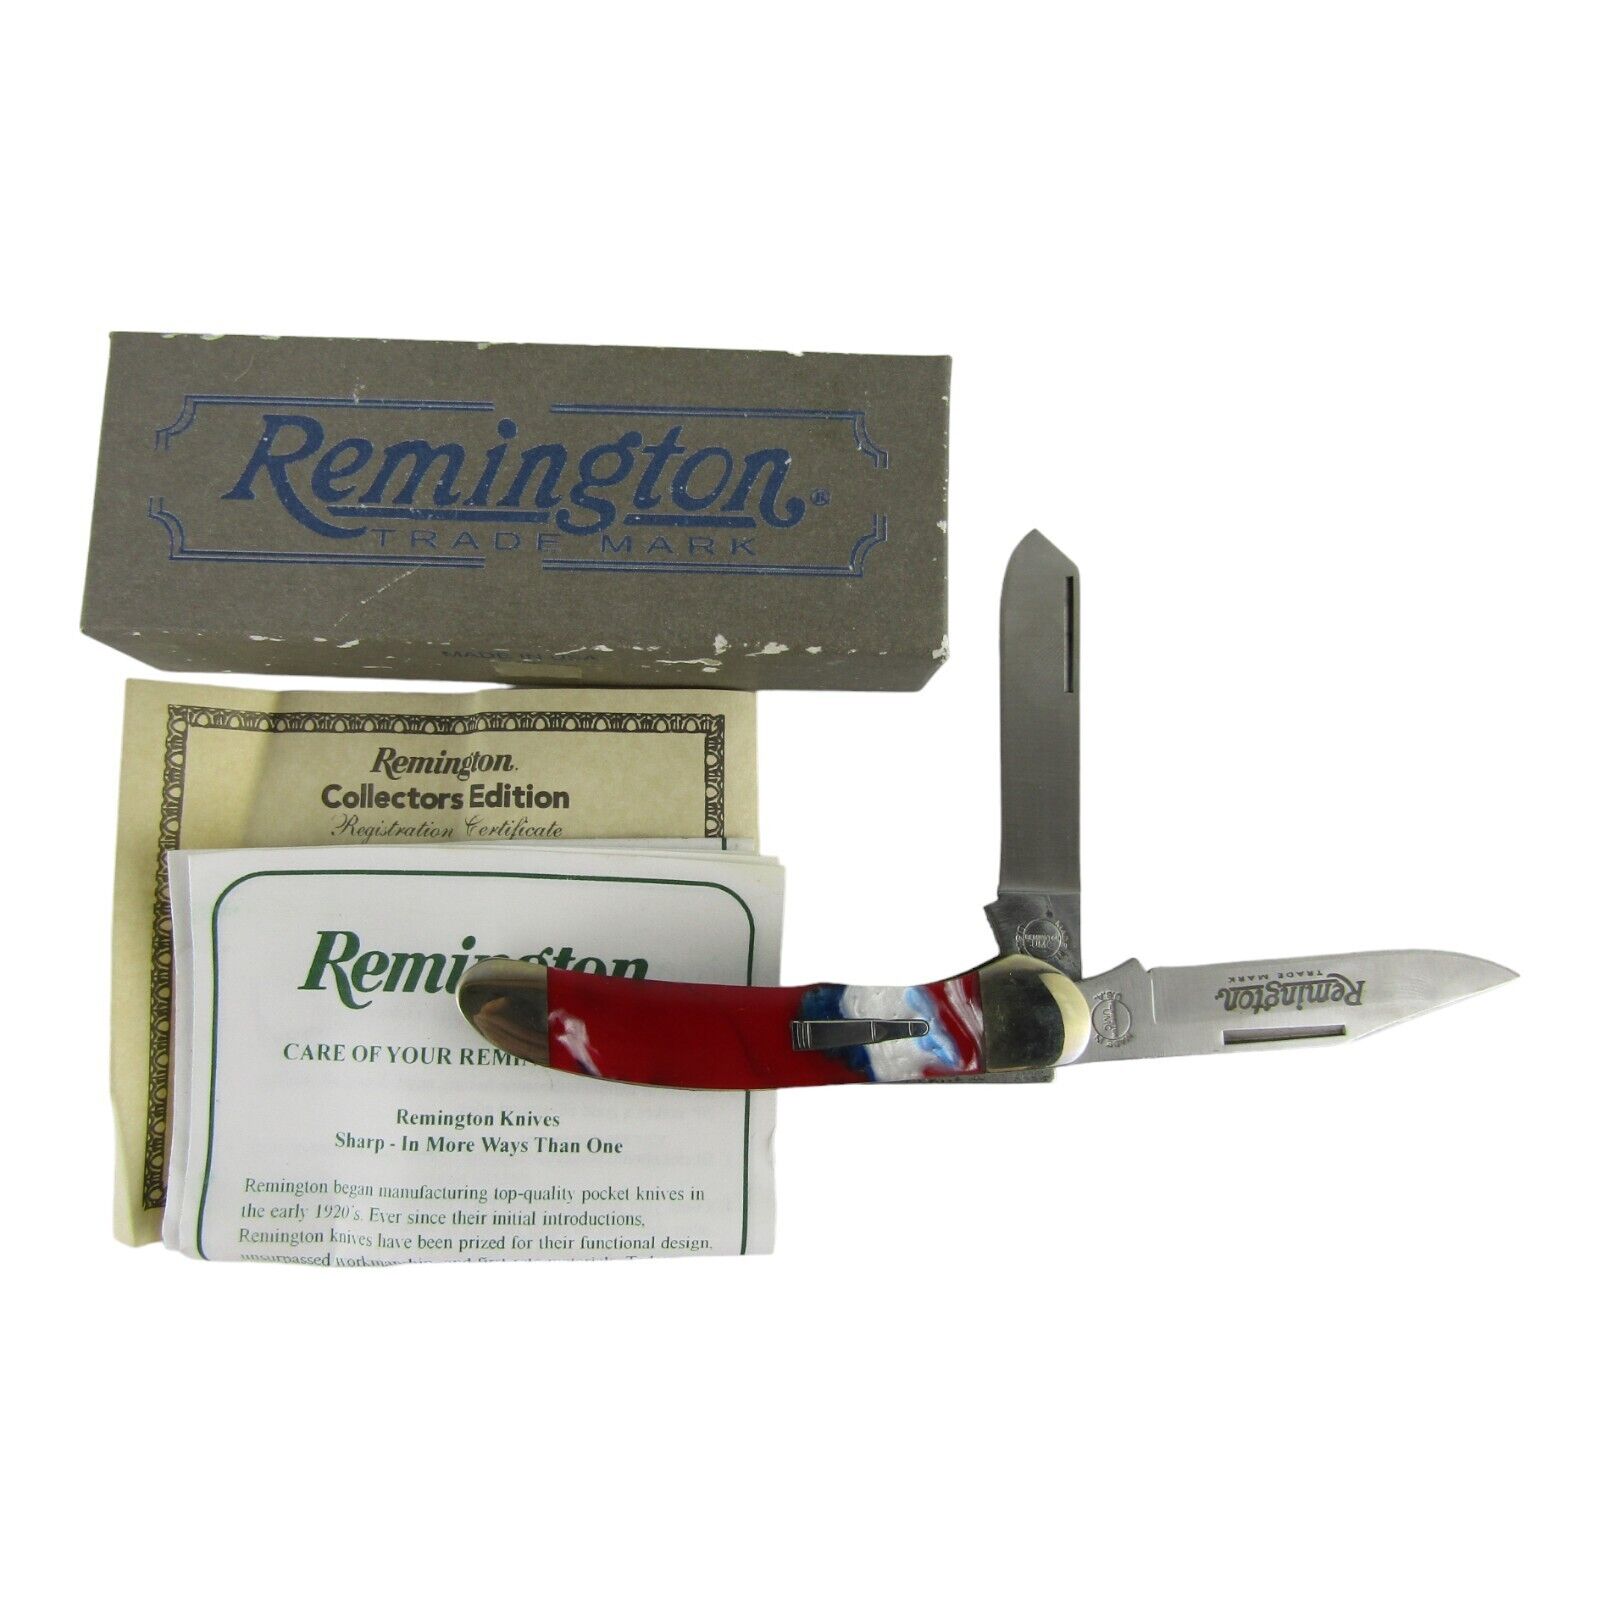 2010 Remington R2253 UMC Double Strike Bullet Knife Red White Blue Swirl